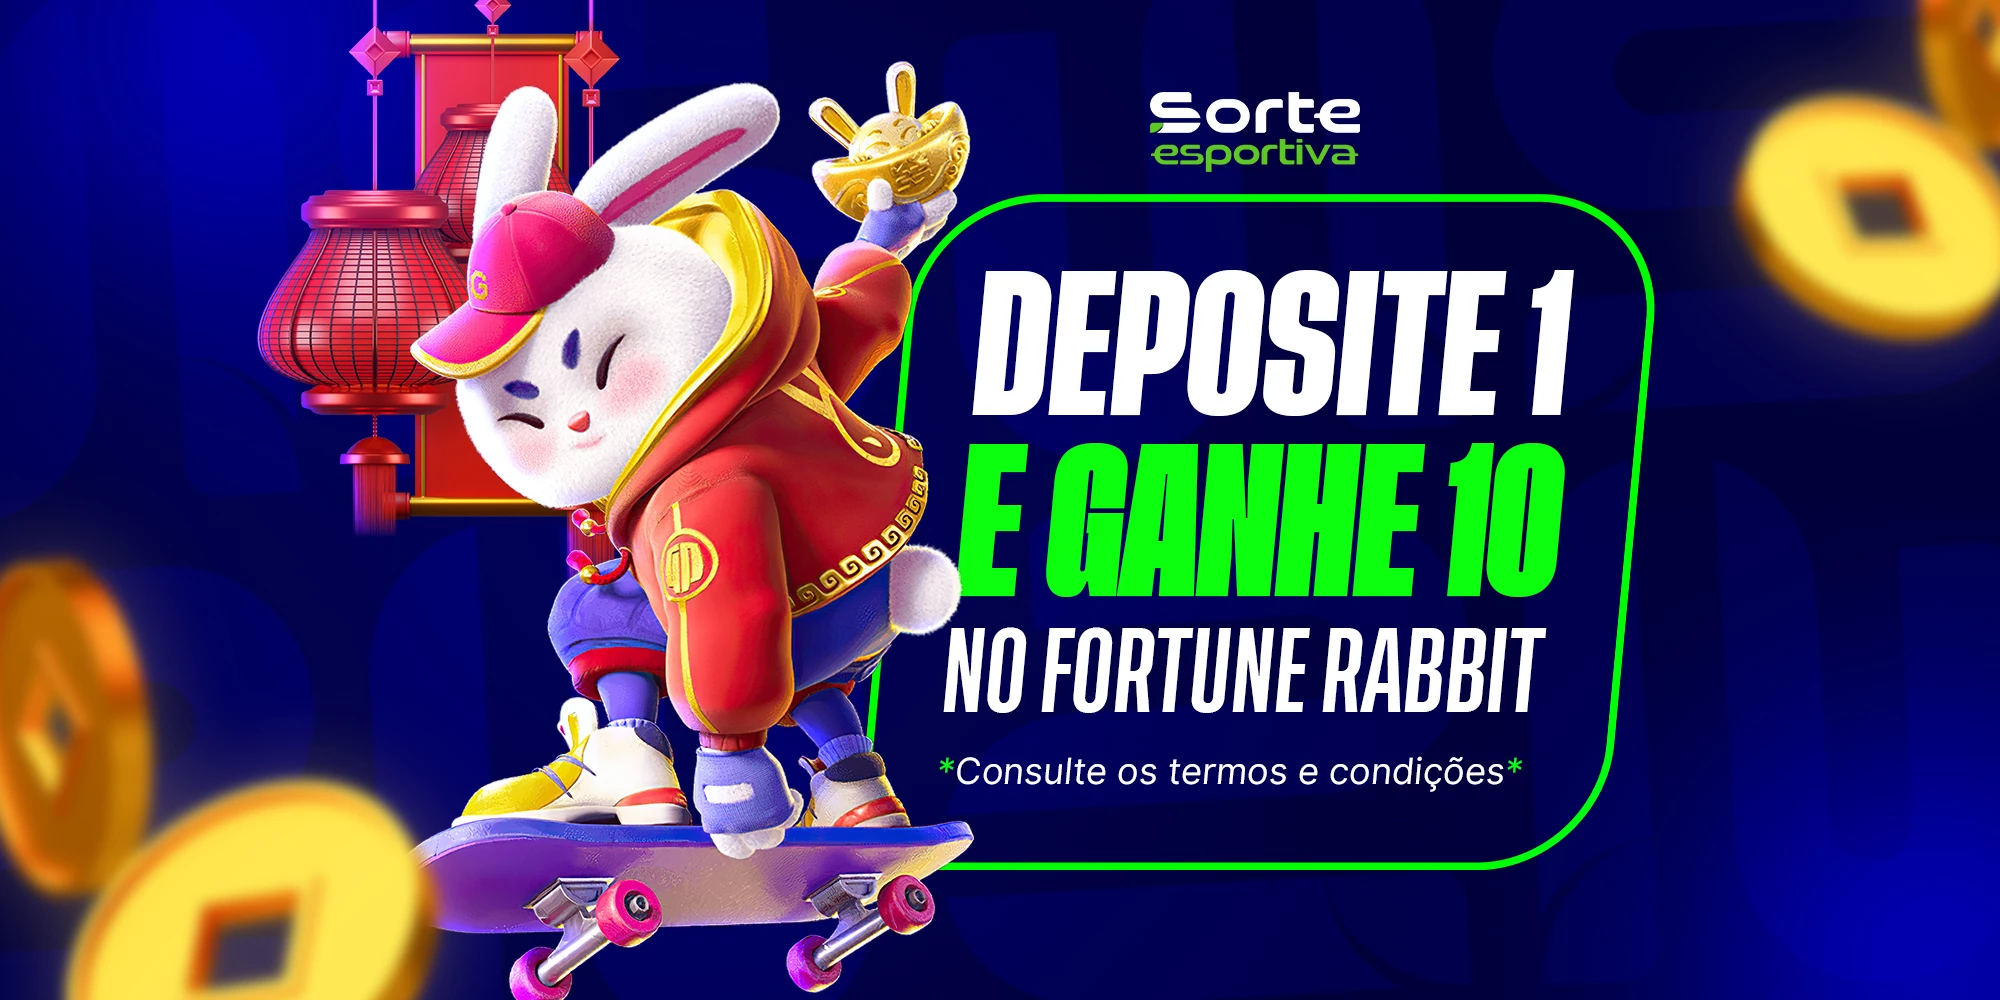 Deposite 1 e Ganhe 10 Fortune Rabbit